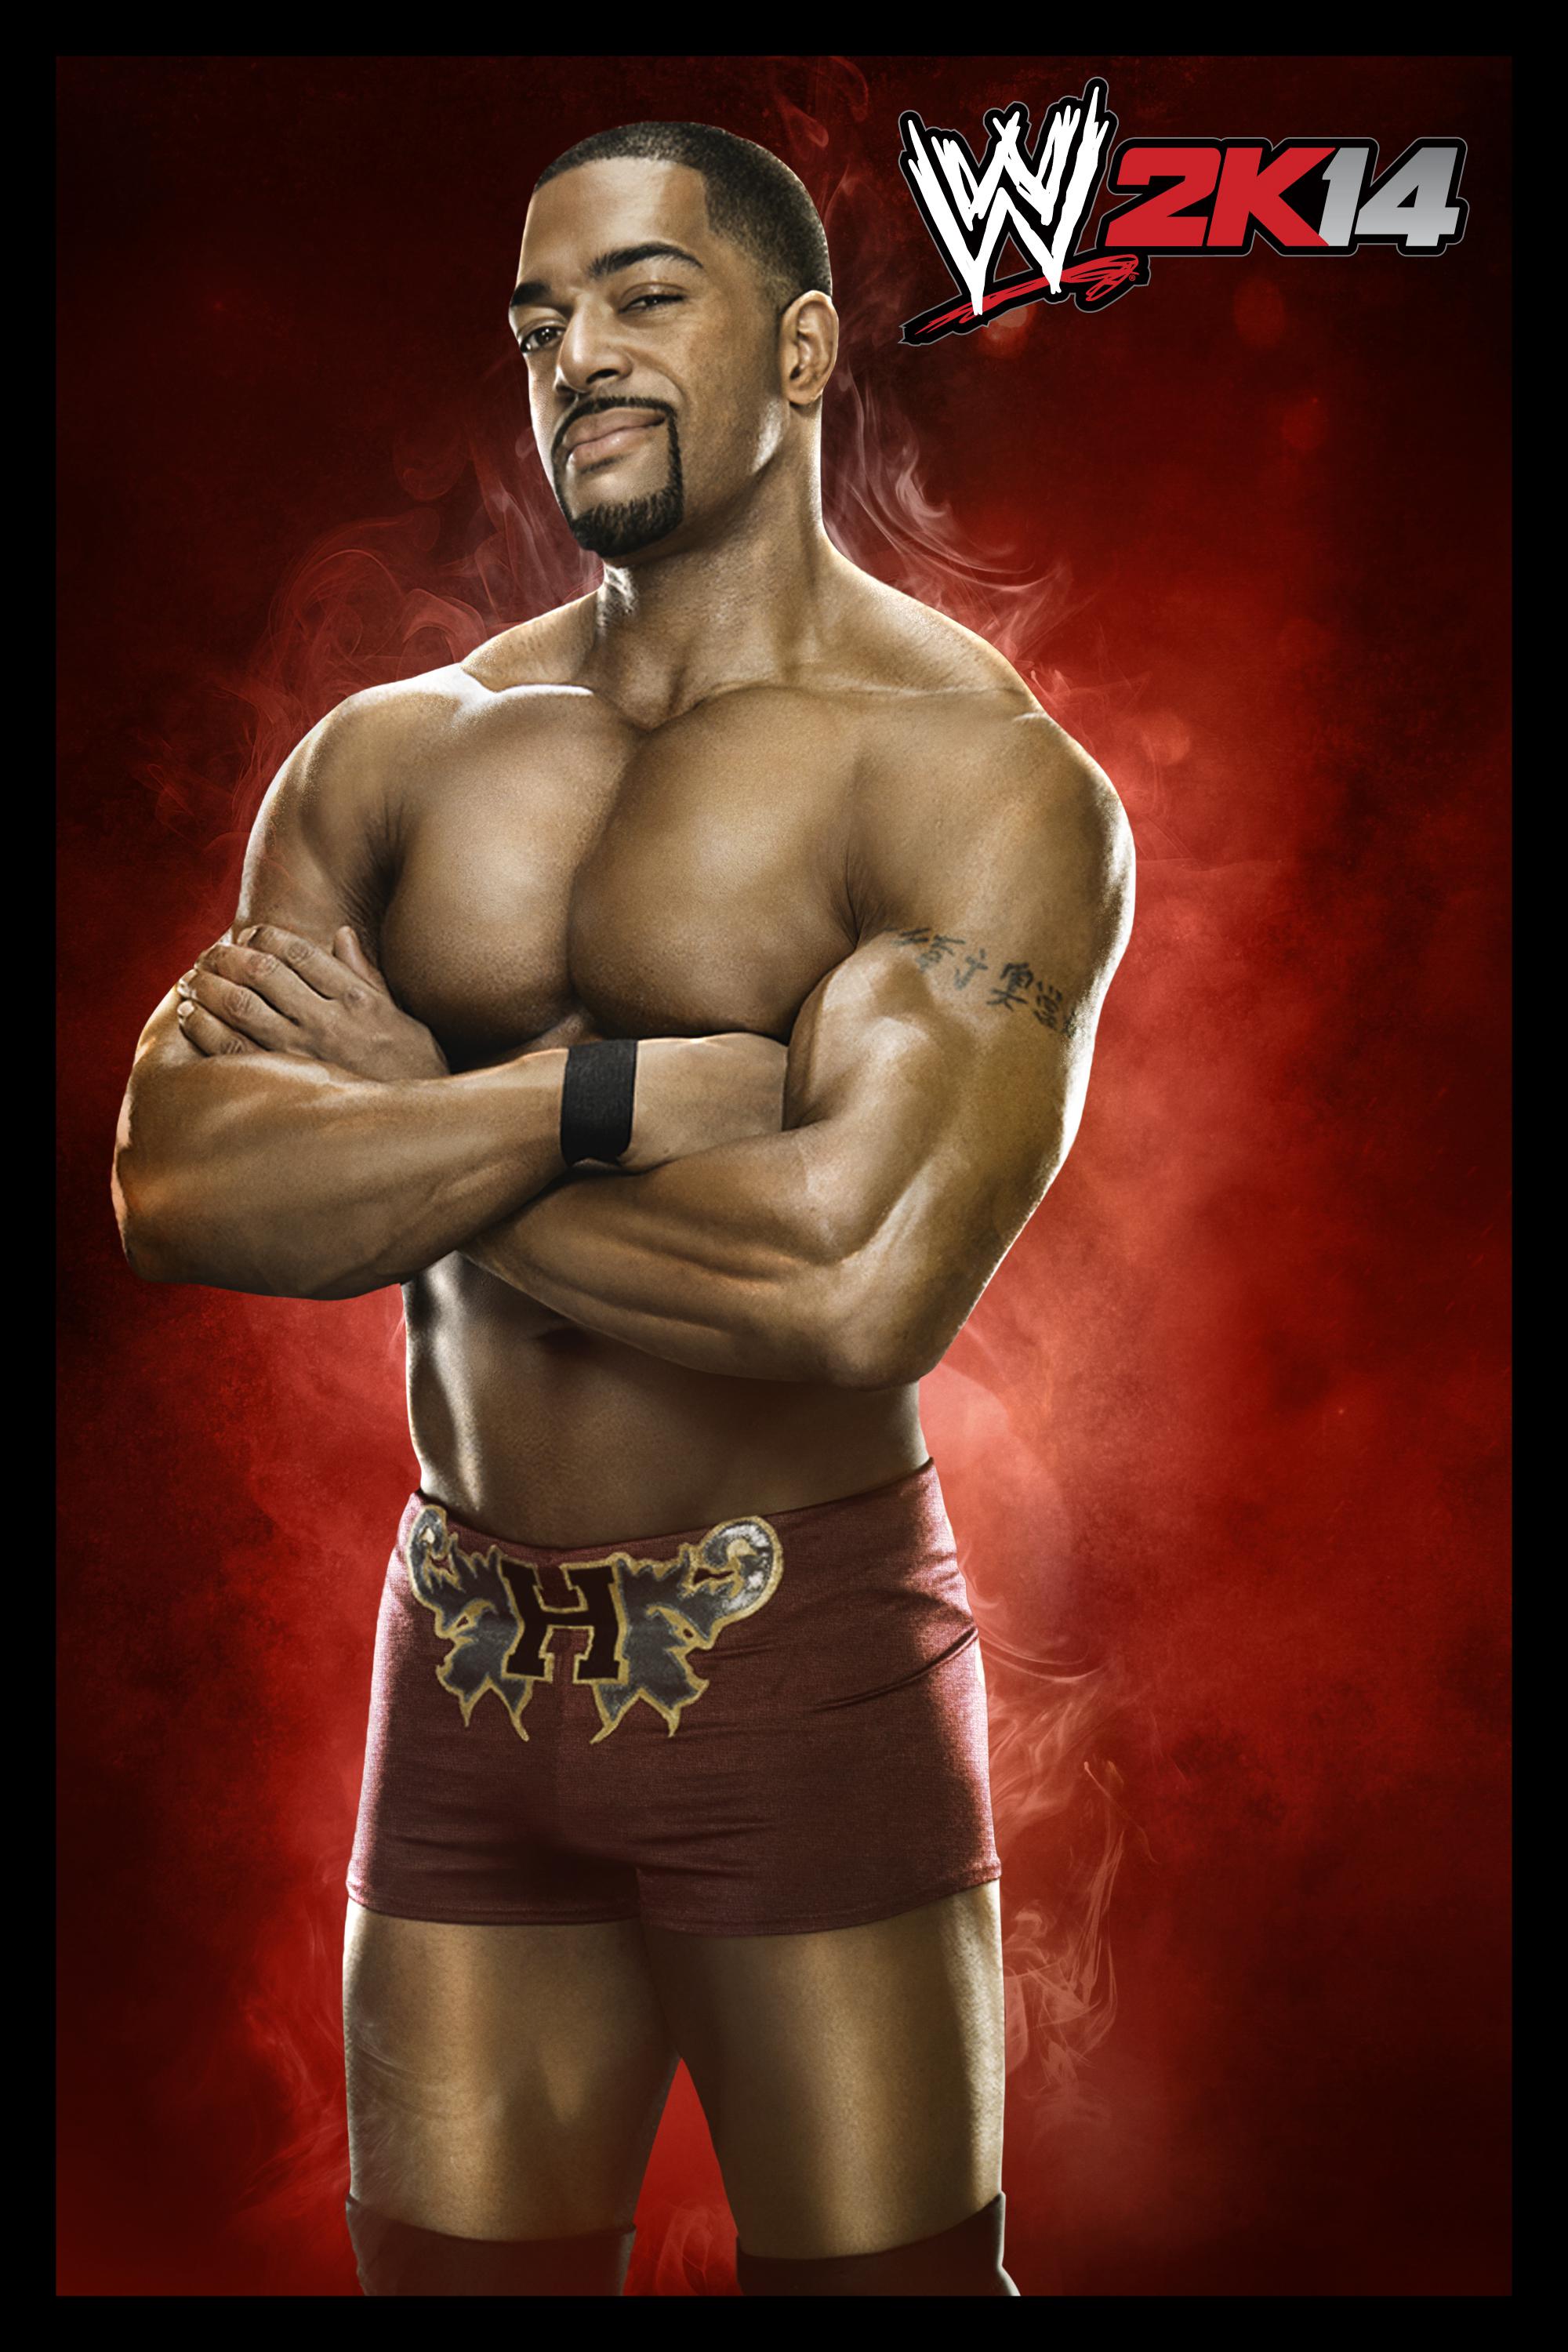 http://www.bazihelp.ir/wp-content/uploads/2013/09/WWE2K14_David_Otunga_CLwww.bazihelp.ir_.jpg